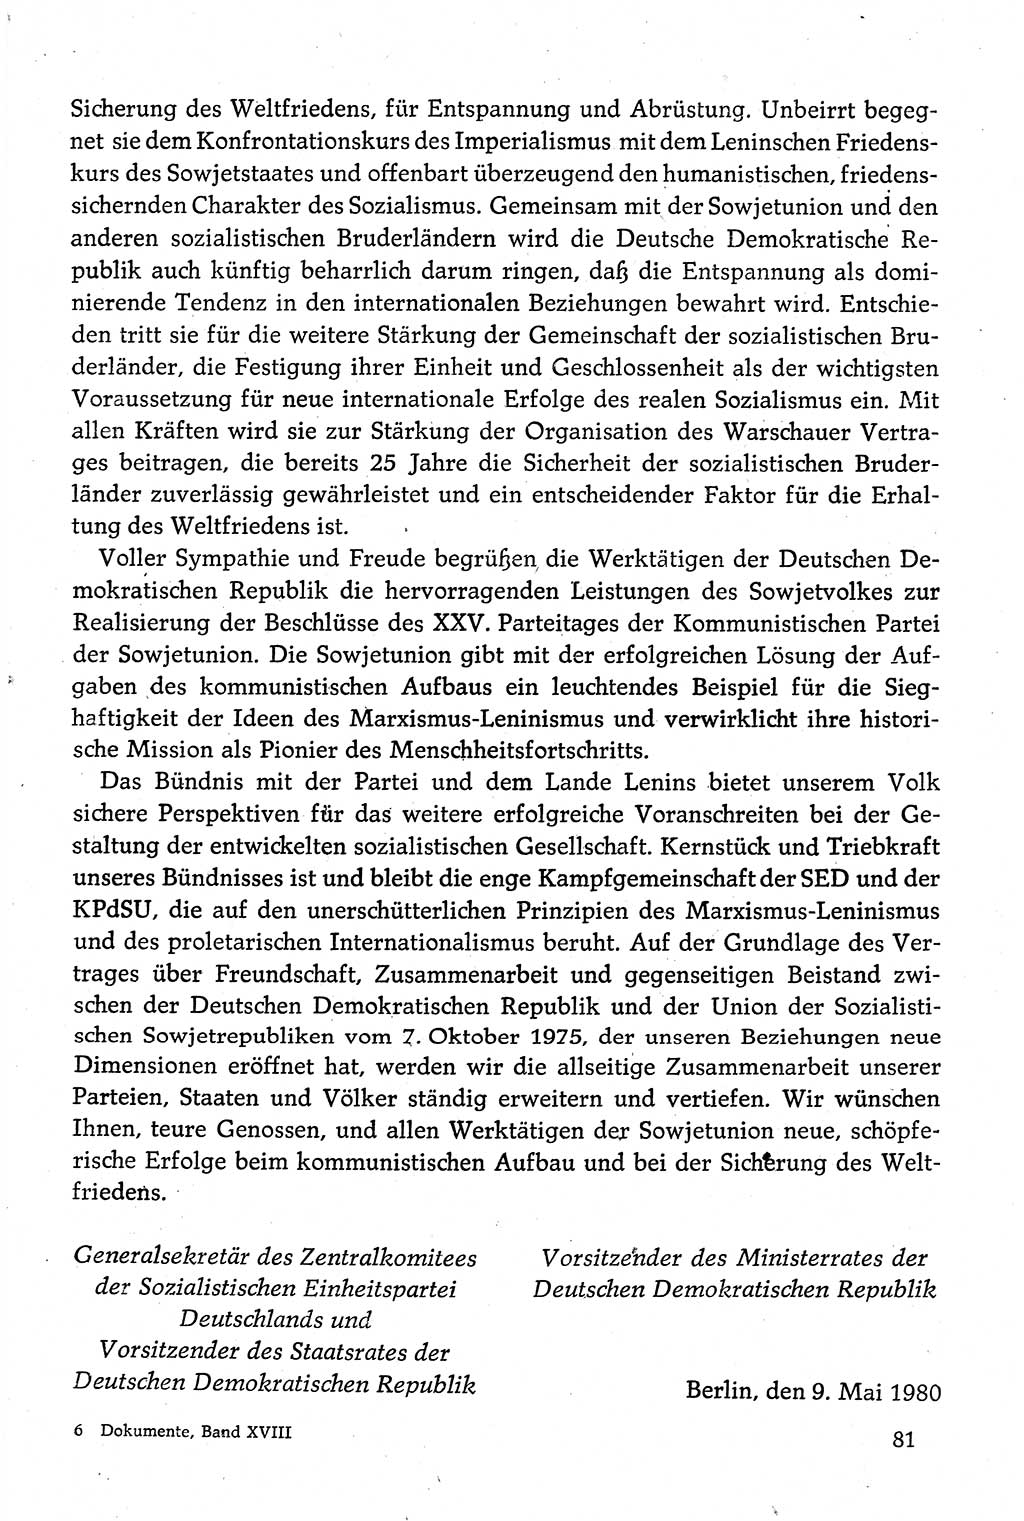 Dokumente der Sozialistischen Einheitspartei Deutschlands (SED) [Deutsche Demokratische Republik (DDR)] 1980-1981, Seite 81 (Dok. SED DDR 1980-1981, S. 81)